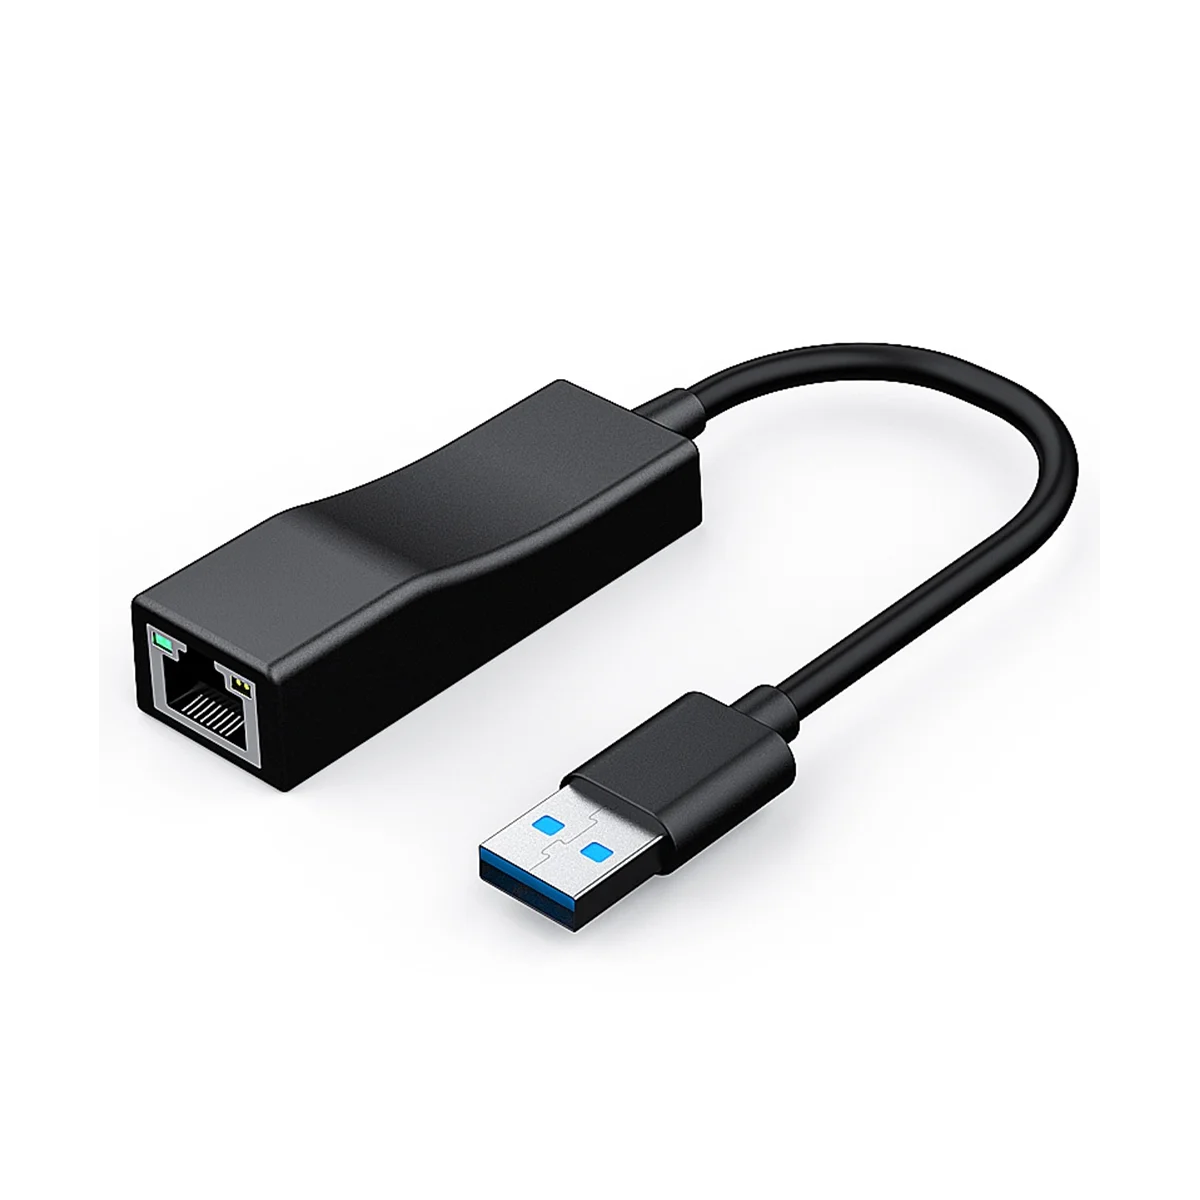 

Адаптер USB-Ethernet, адаптер USB 3,0-Gigabit Ethernet LAN, совместим с MacBook, Surface Pro